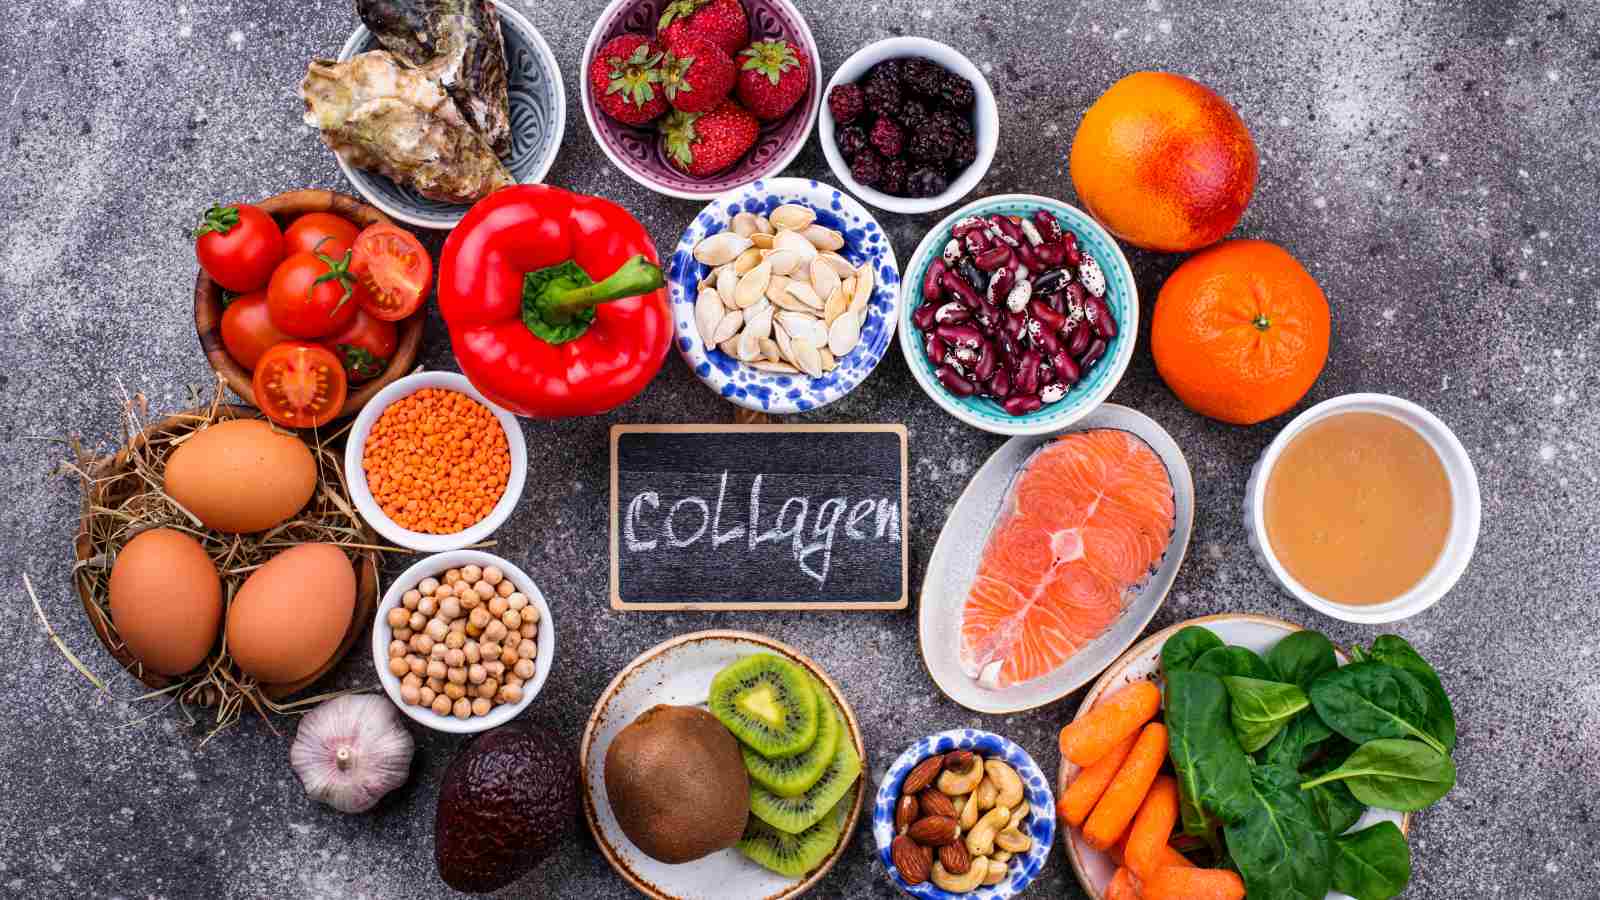 Các thực phẩm bổ sung collagen qua đường ăn uống